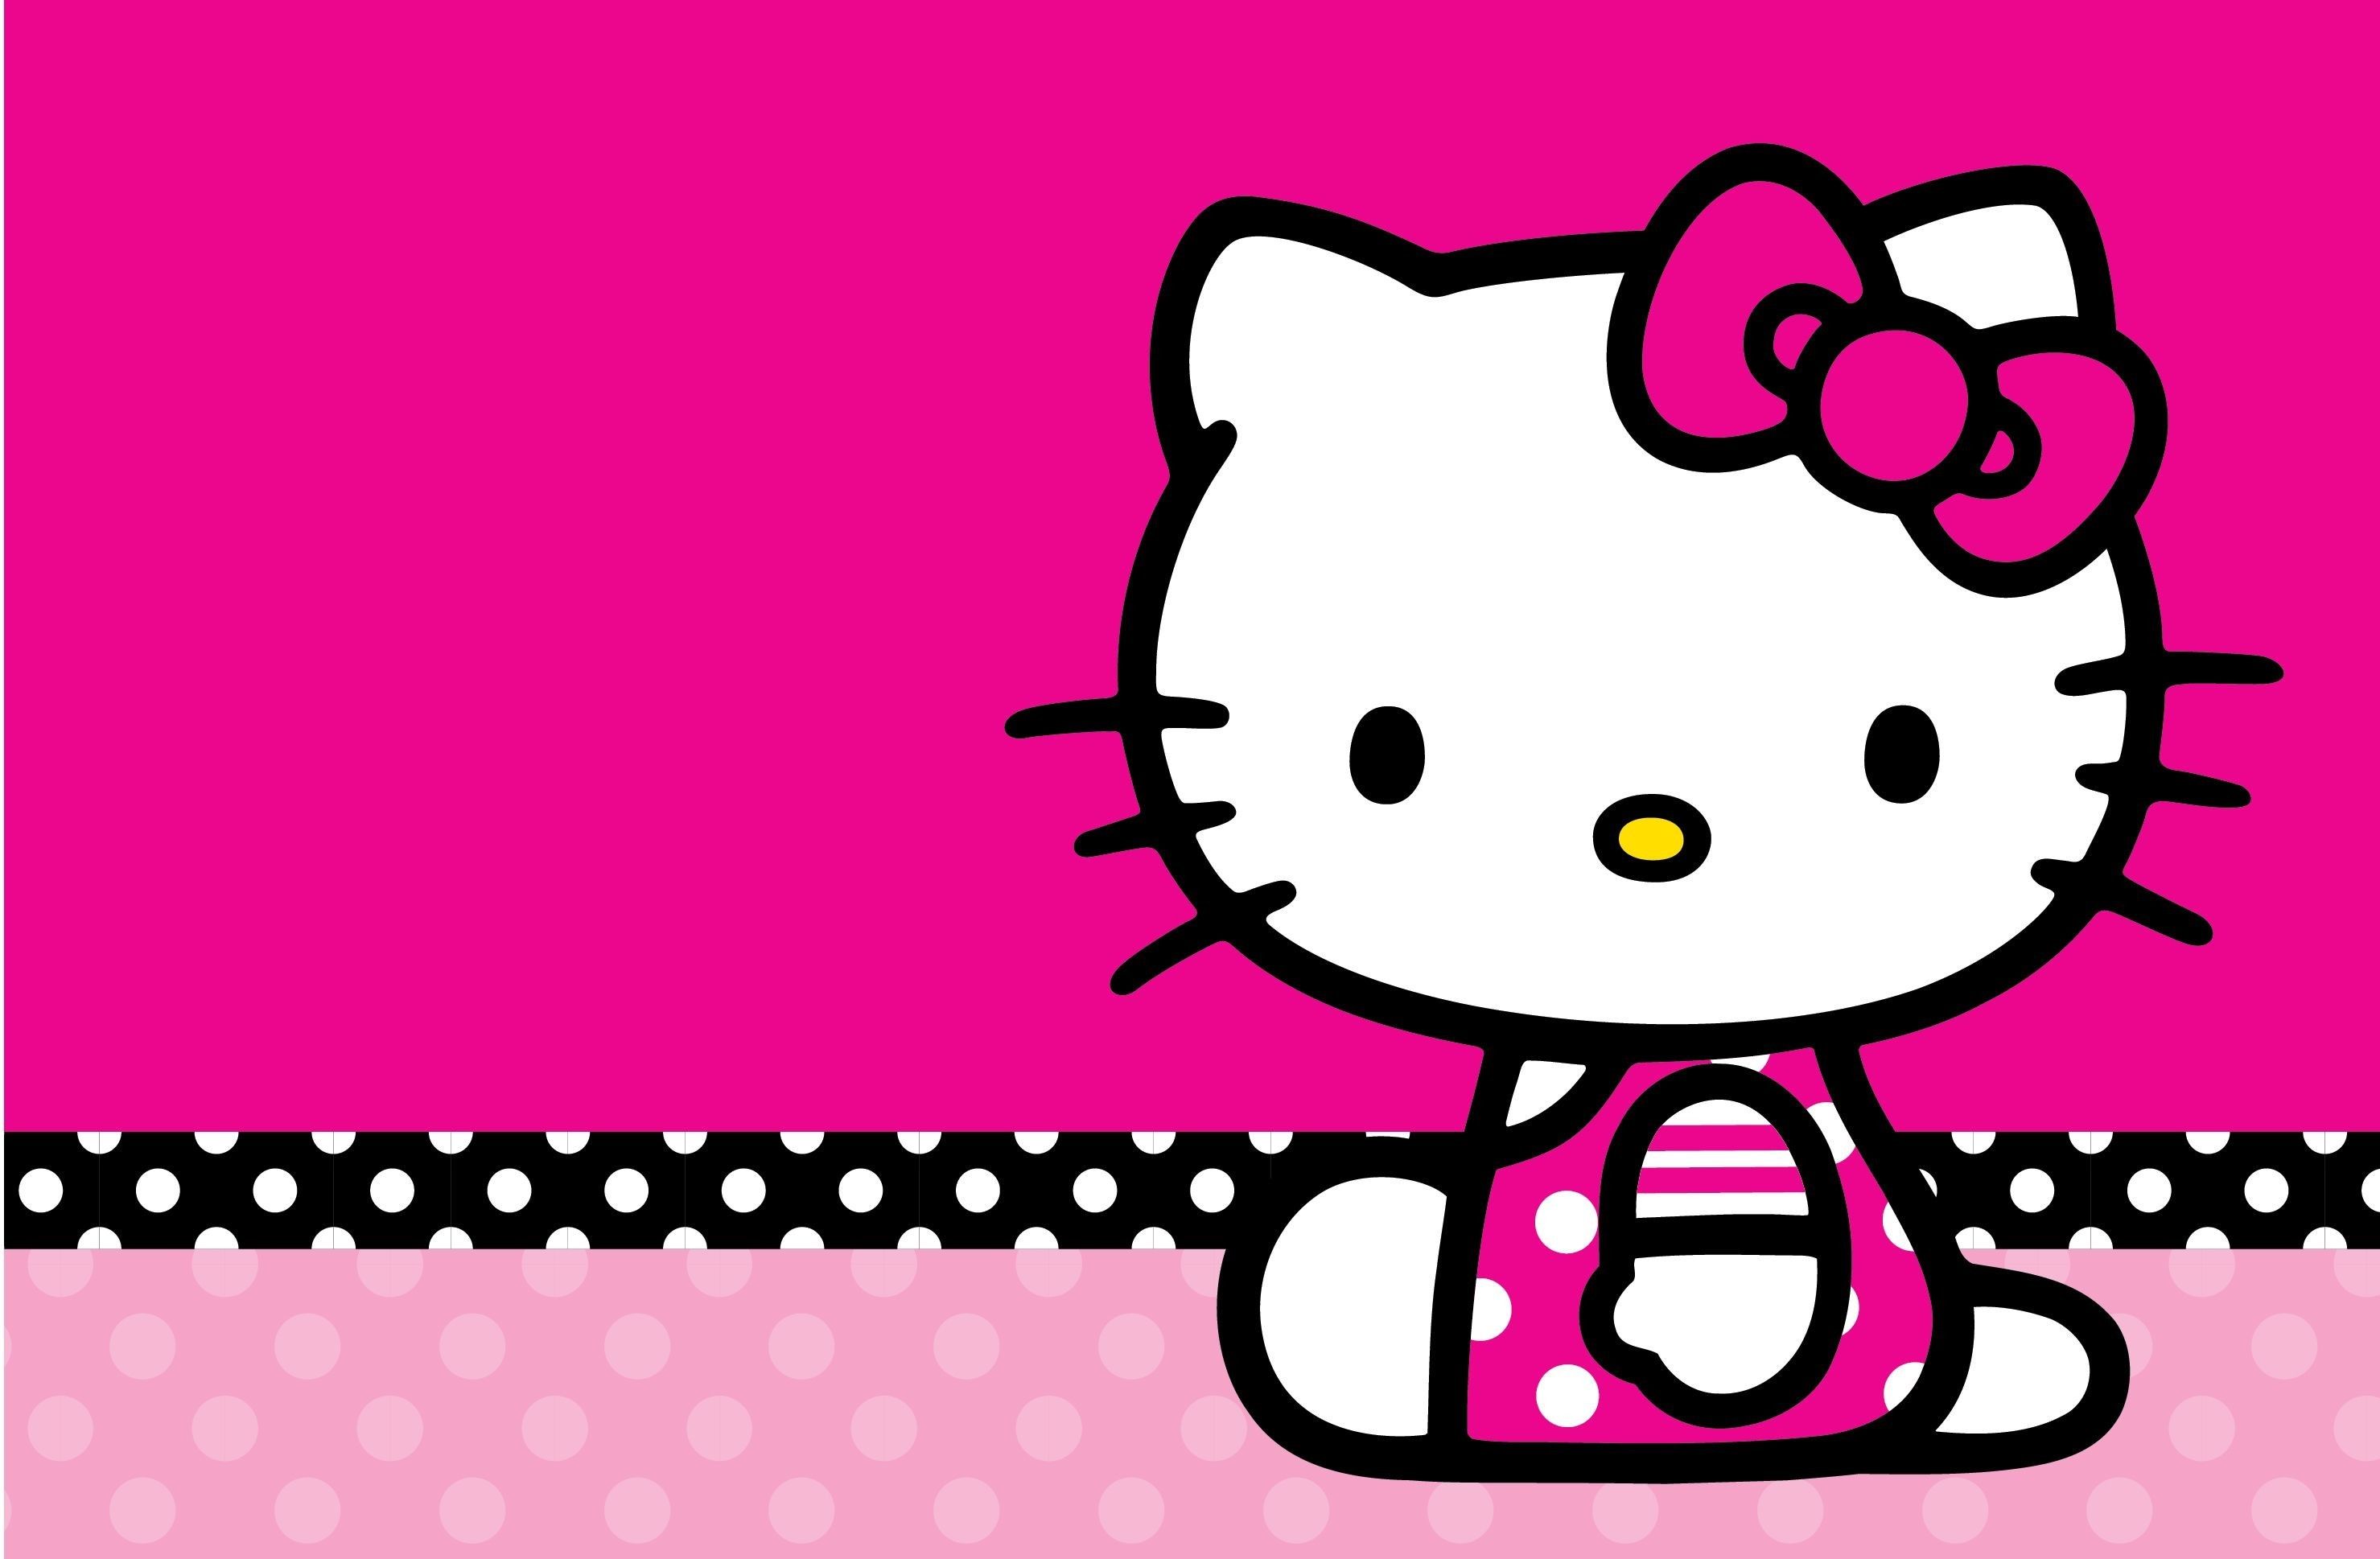 Thật đáng yêu và ngộ nghĩnh với mẫu giấy dán tường Hello Kitty! Chú mèo Hello Kitty đáng yêu này sẽ làm cho ngôi nhà của bạn trở nên xinh đẹp hơn bao giờ hết. Hãy cùng trang trí không gian của bạn bằng những bức tranh và giấy dán tường đáng yêu như thế này.